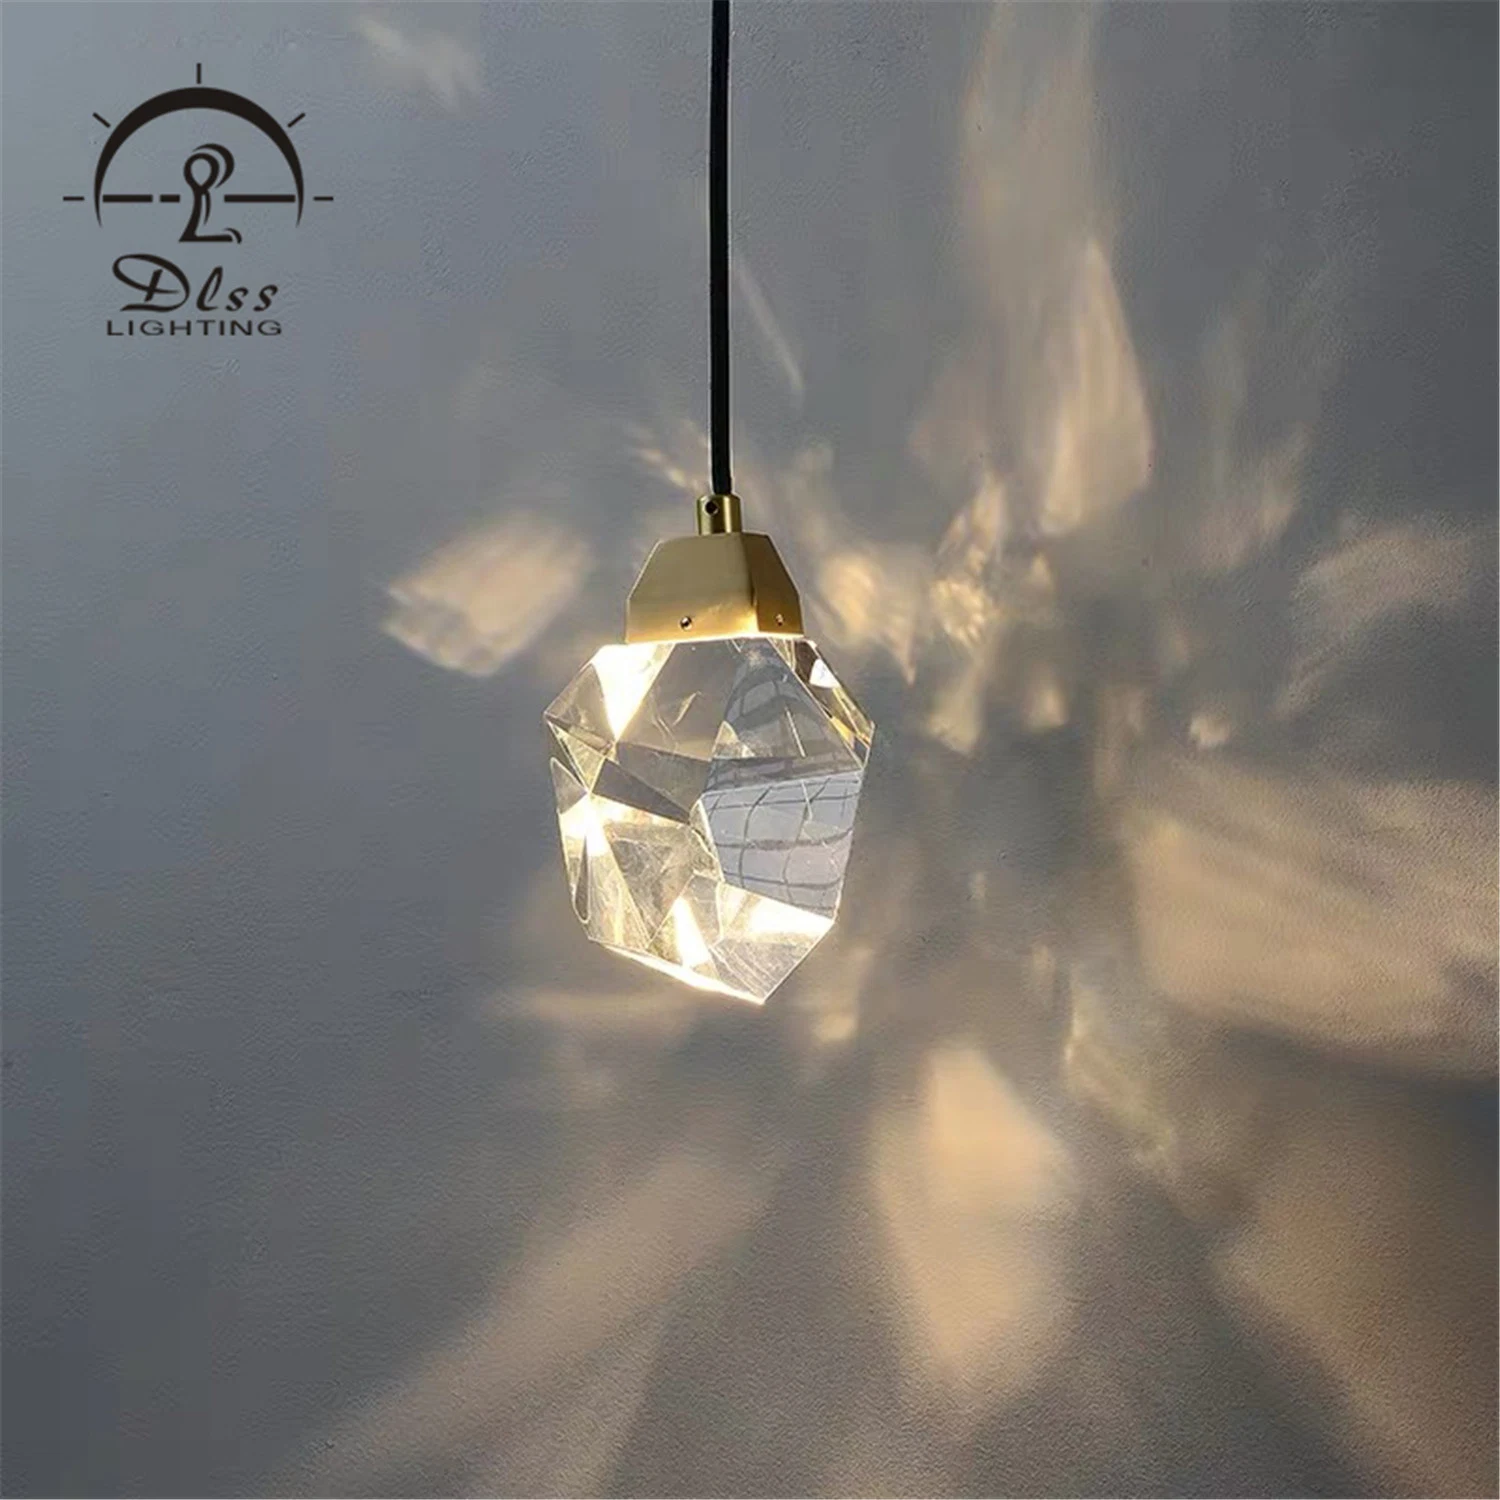 Lampe moderne de luxe décoration d'intérieur éclairage Crystal lumière LED simple Hotel lustre